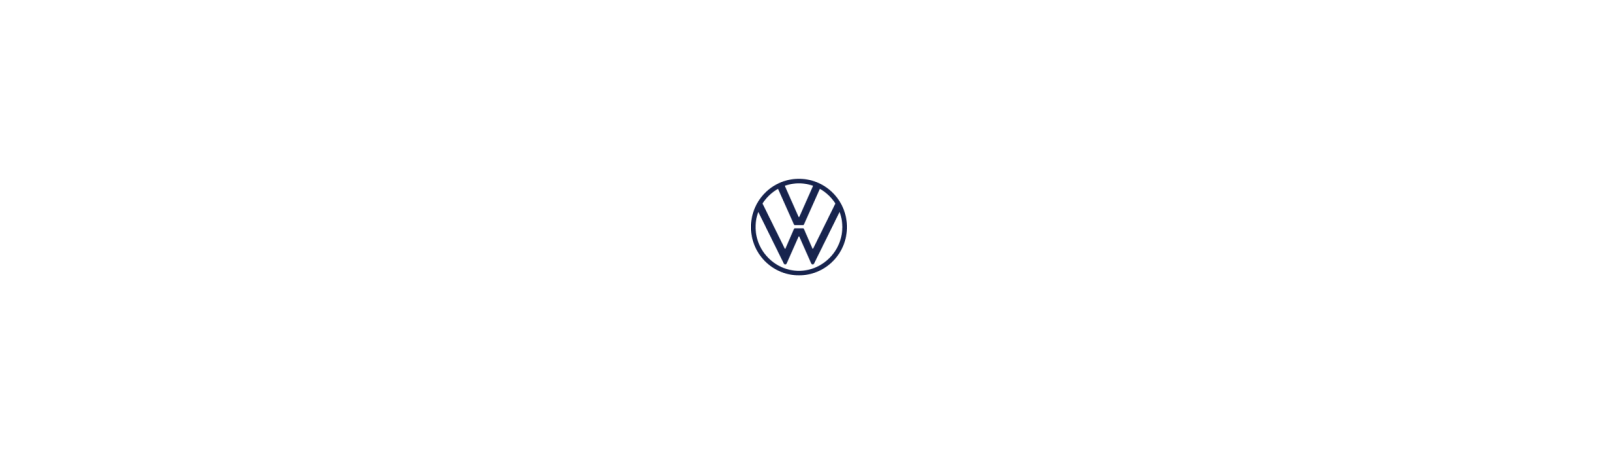 Volkswagen T-CROSS